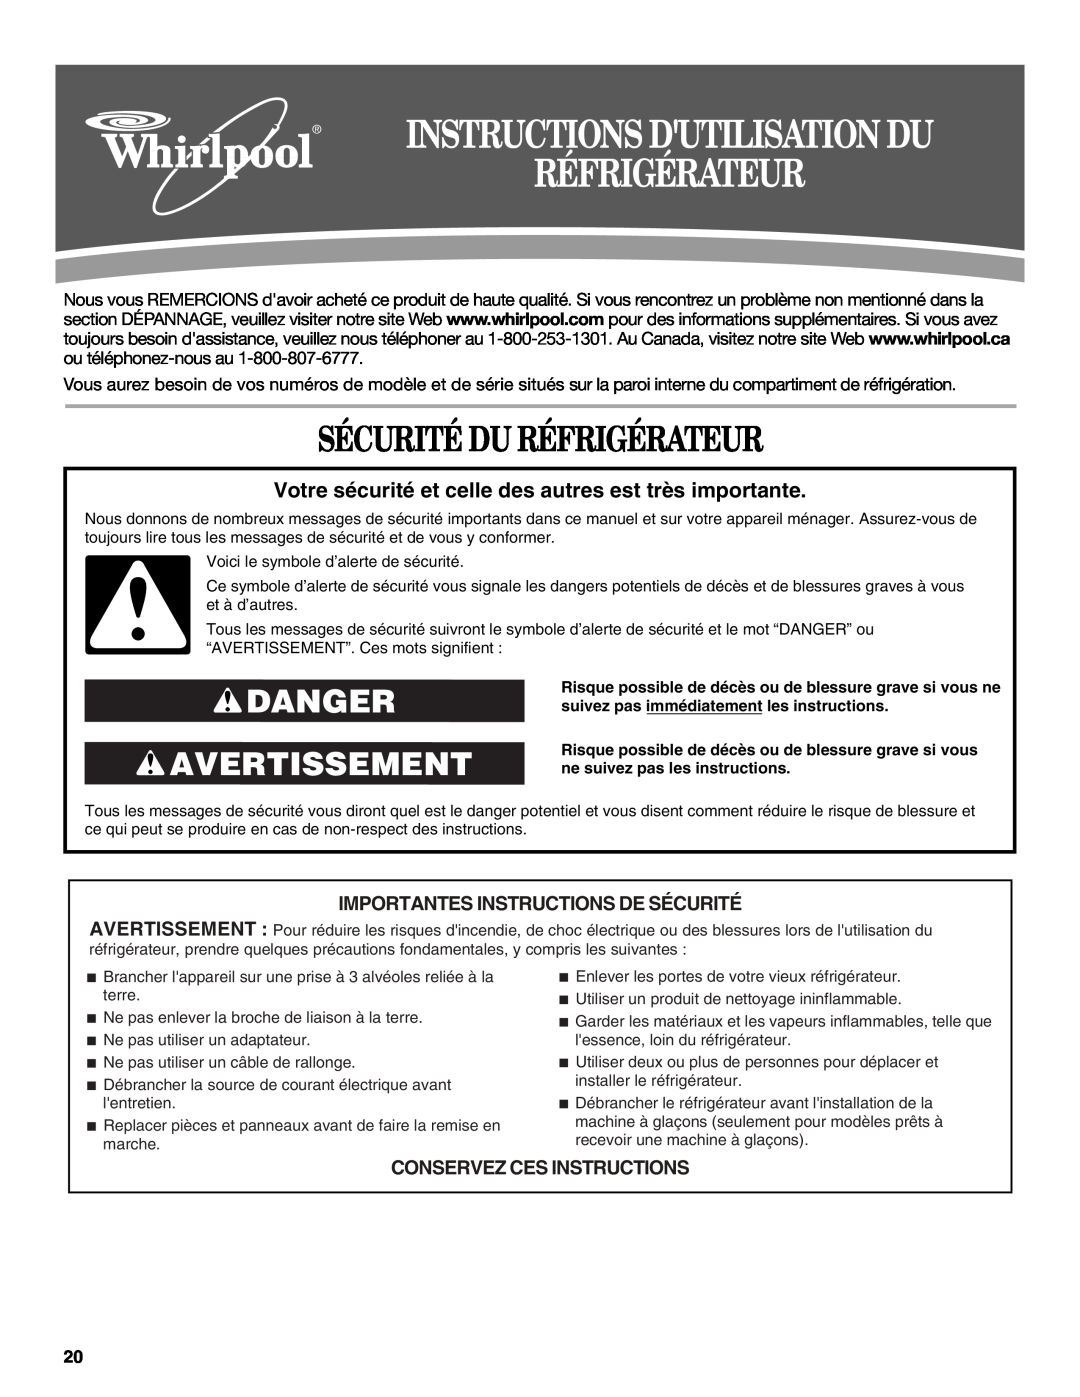 Whirlpool W10175448A Sécurité Du Réfrigérateur, Danger Avertissement, Importantes Instructions De Sécurité 